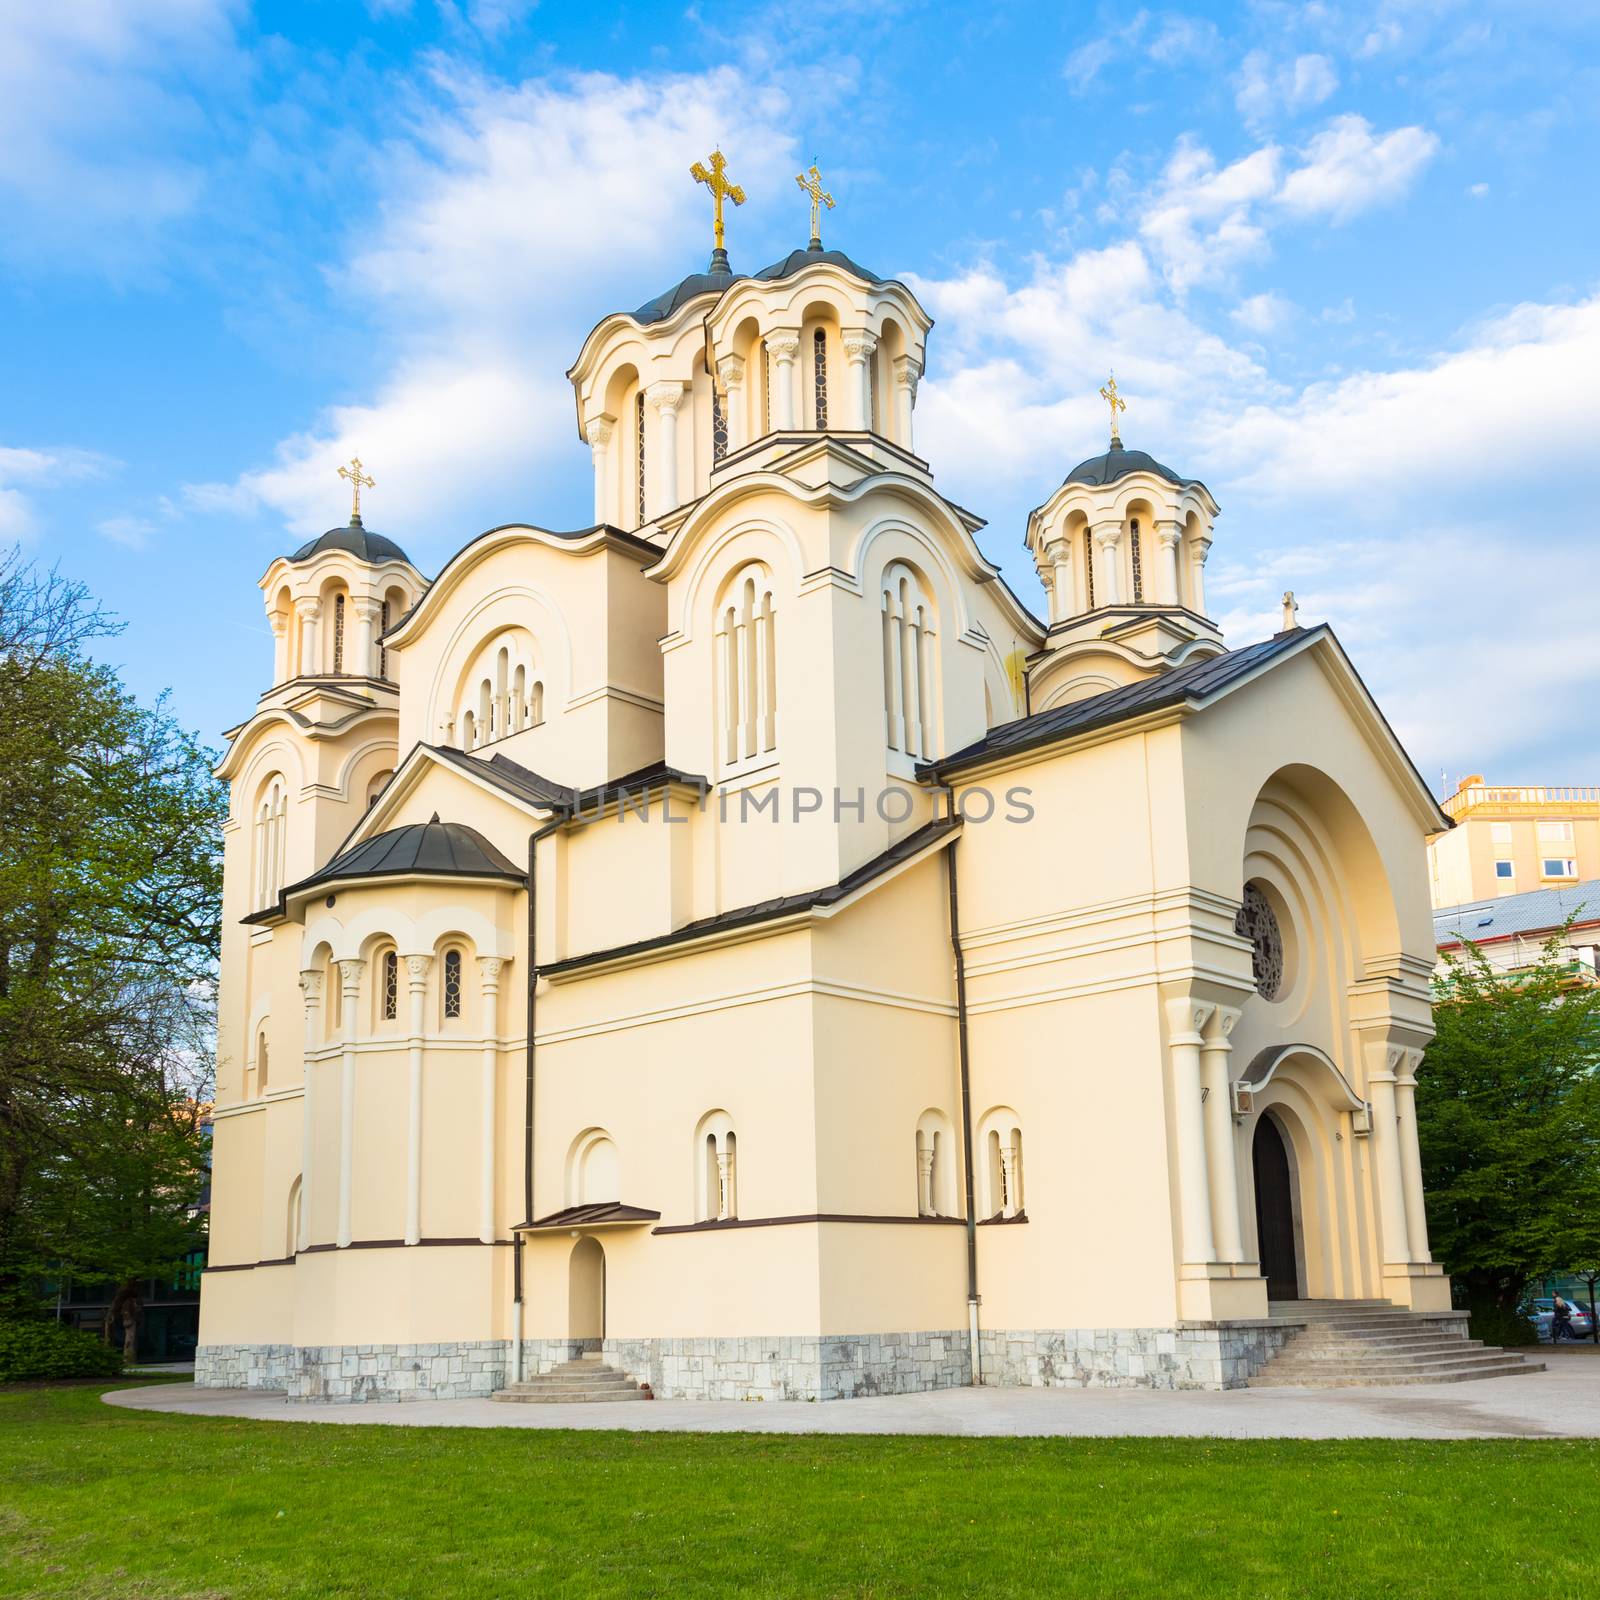 Orthodox Church in Ljubljana, Slovenia by kasto